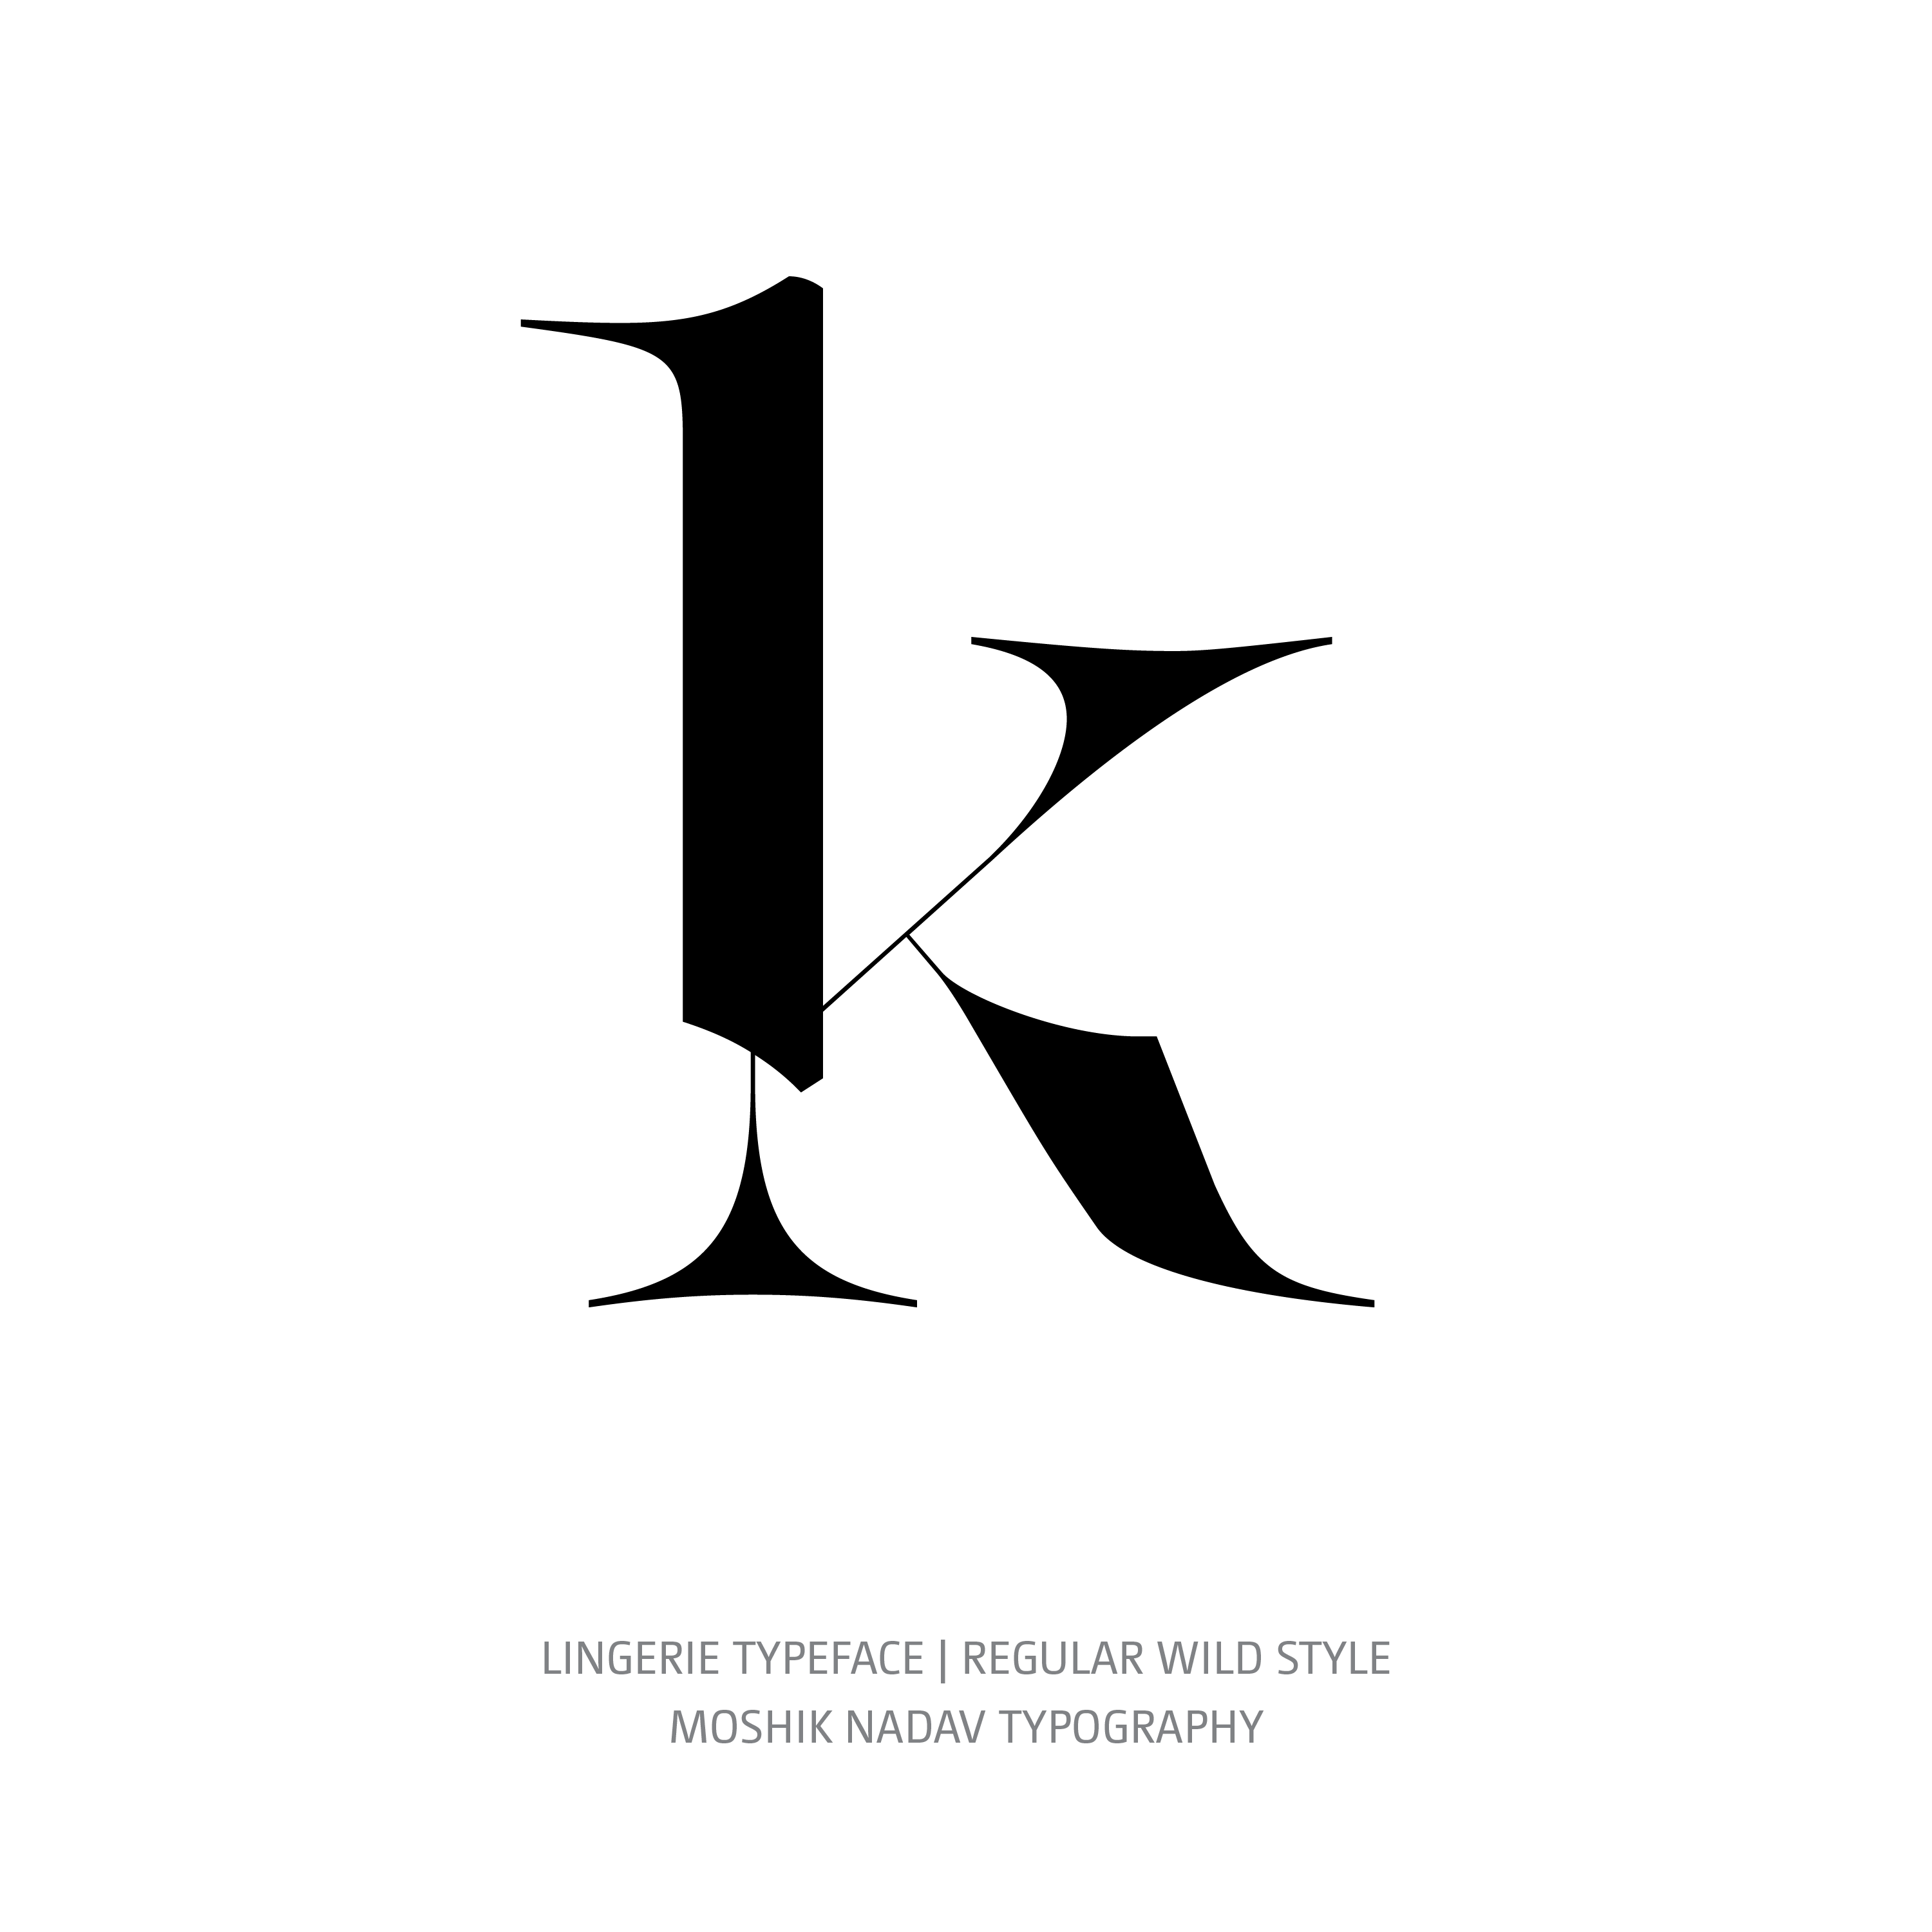 Lingerie Typeface Regular Wild k